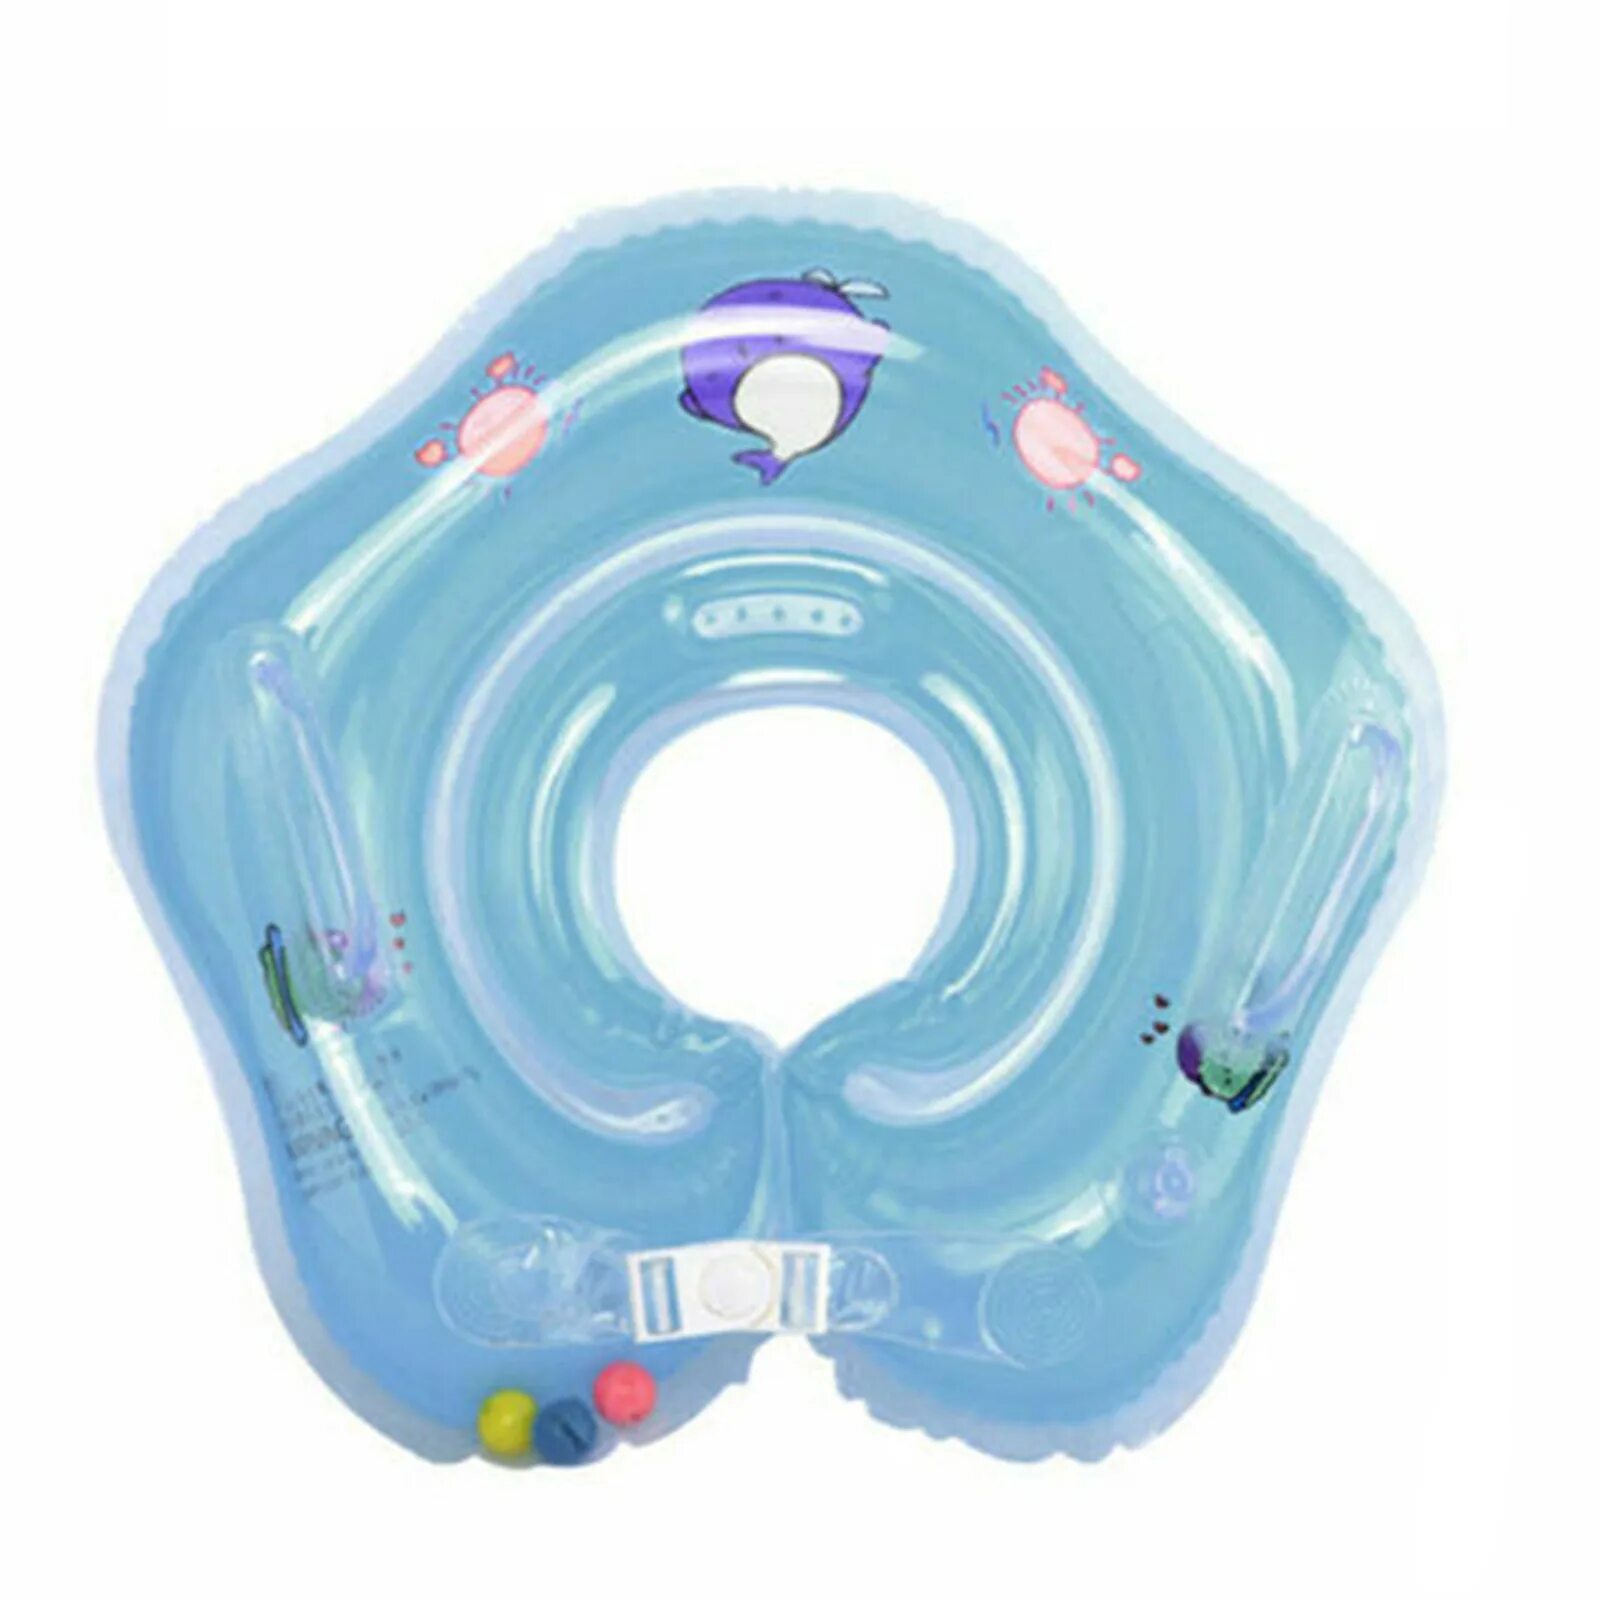 Круги для плавания для детей. Надувной круг для купания детей Baby swimmer. Детский круг на шею для купания. Воротник для купания младенцев. Воротник для плавания новорожденных.